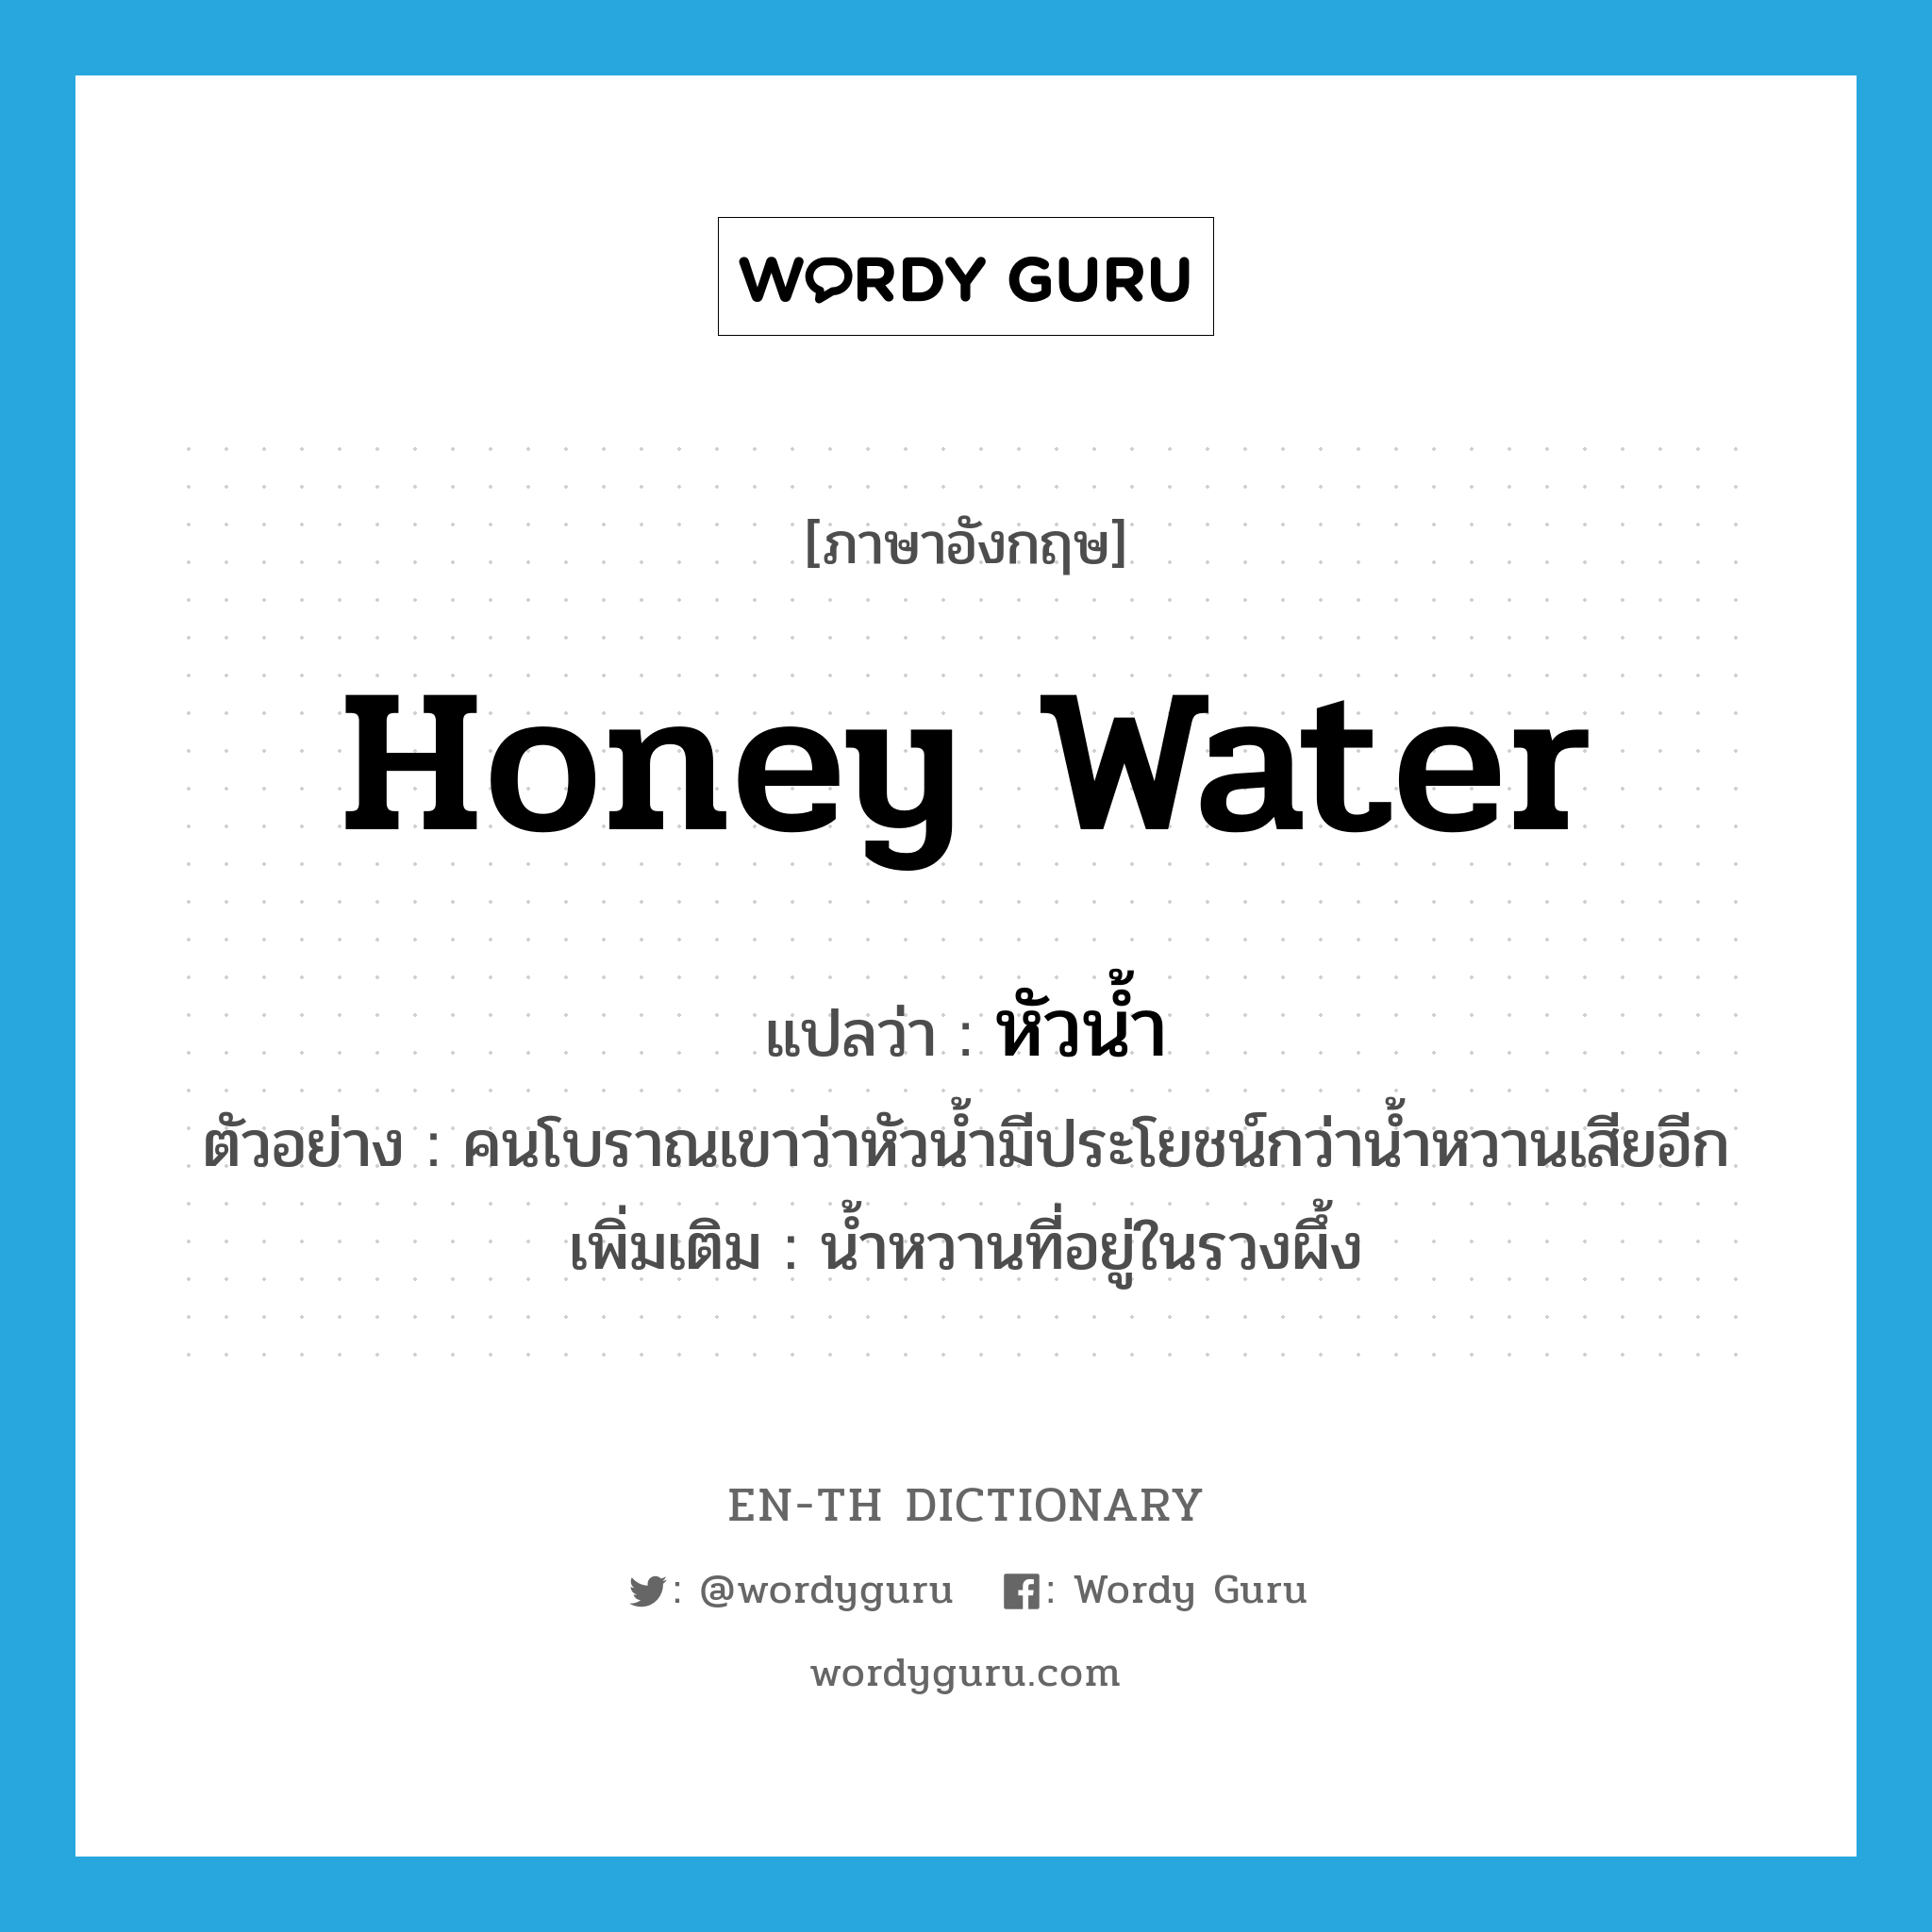 honey water แปลว่า?, คำศัพท์ภาษาอังกฤษ honey water แปลว่า หัวน้ำ ประเภท N ตัวอย่าง คนโบราณเขาว่าหัวน้ำมีประโยชน์กว่าน้ำหวานเสียอีก เพิ่มเติม น้ำหวานที่อยู่ในรวงผึ้ง หมวด N